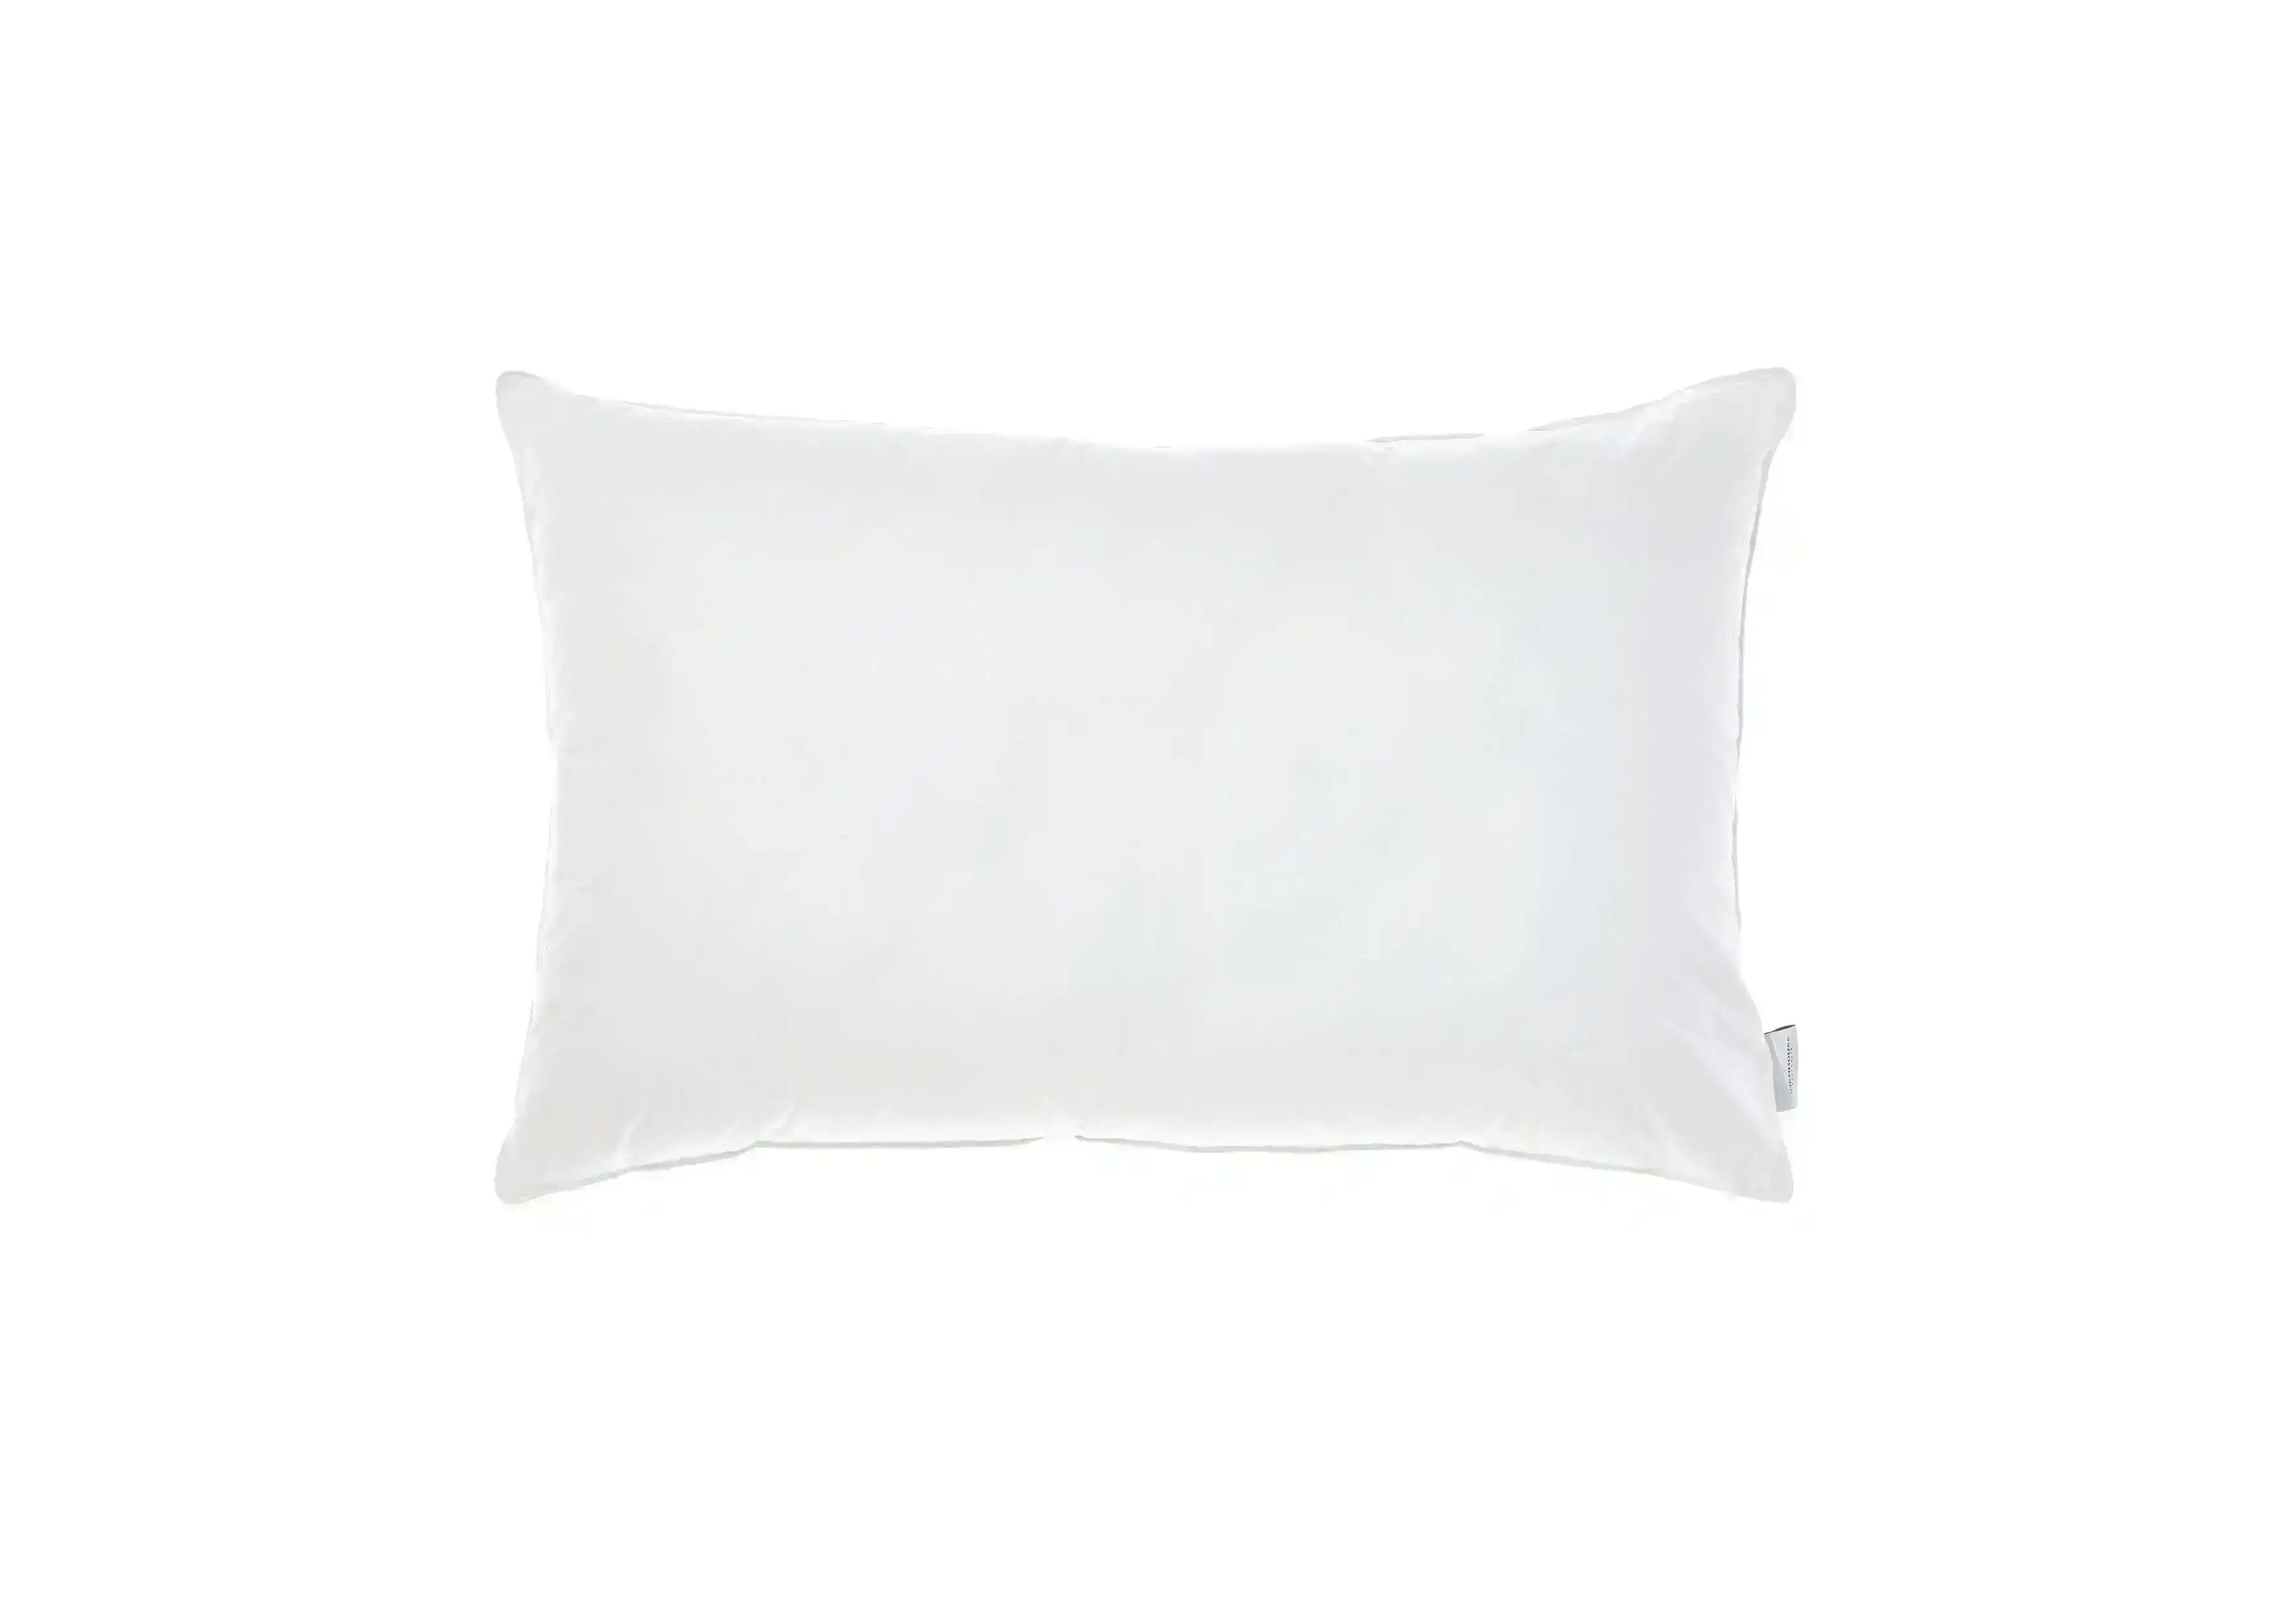 Linen House All-Seasons Standard Pillow - 1000 GSM